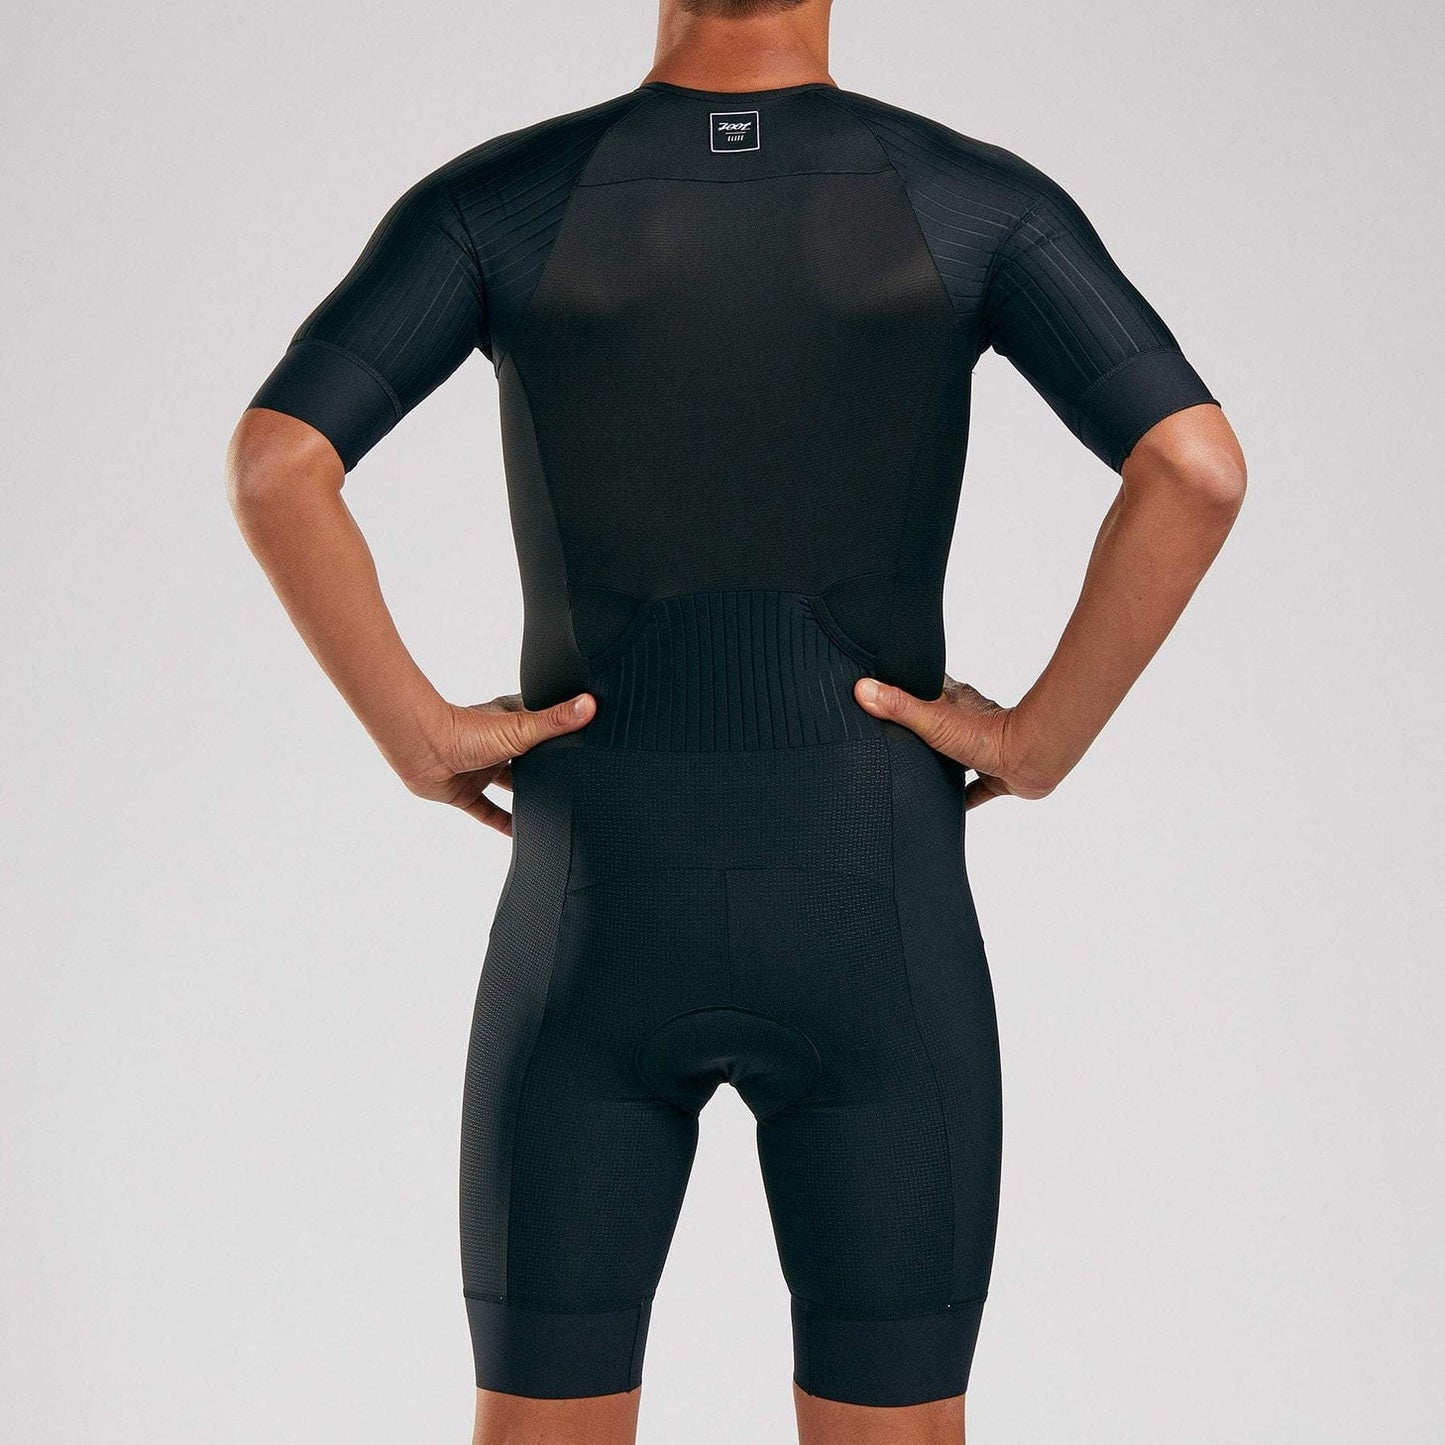 ZOOT ELITE TRI AERO FZ RACESUIT - ELITE triathlon suit